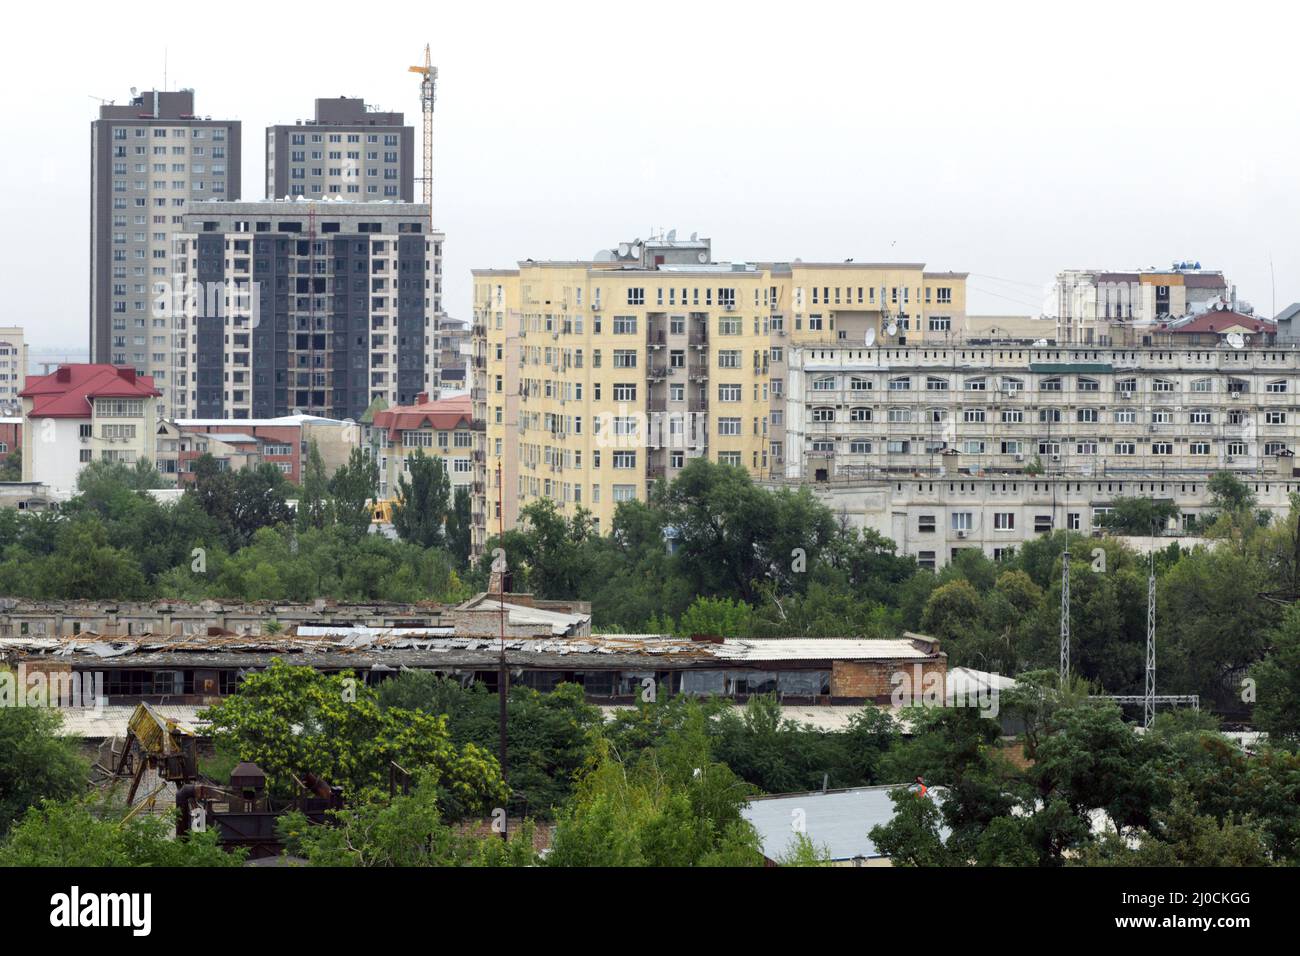 Bâtiments à plusieurs étages et usines inutilisées à Bichkek, au Kirghizistan Banque D'Images